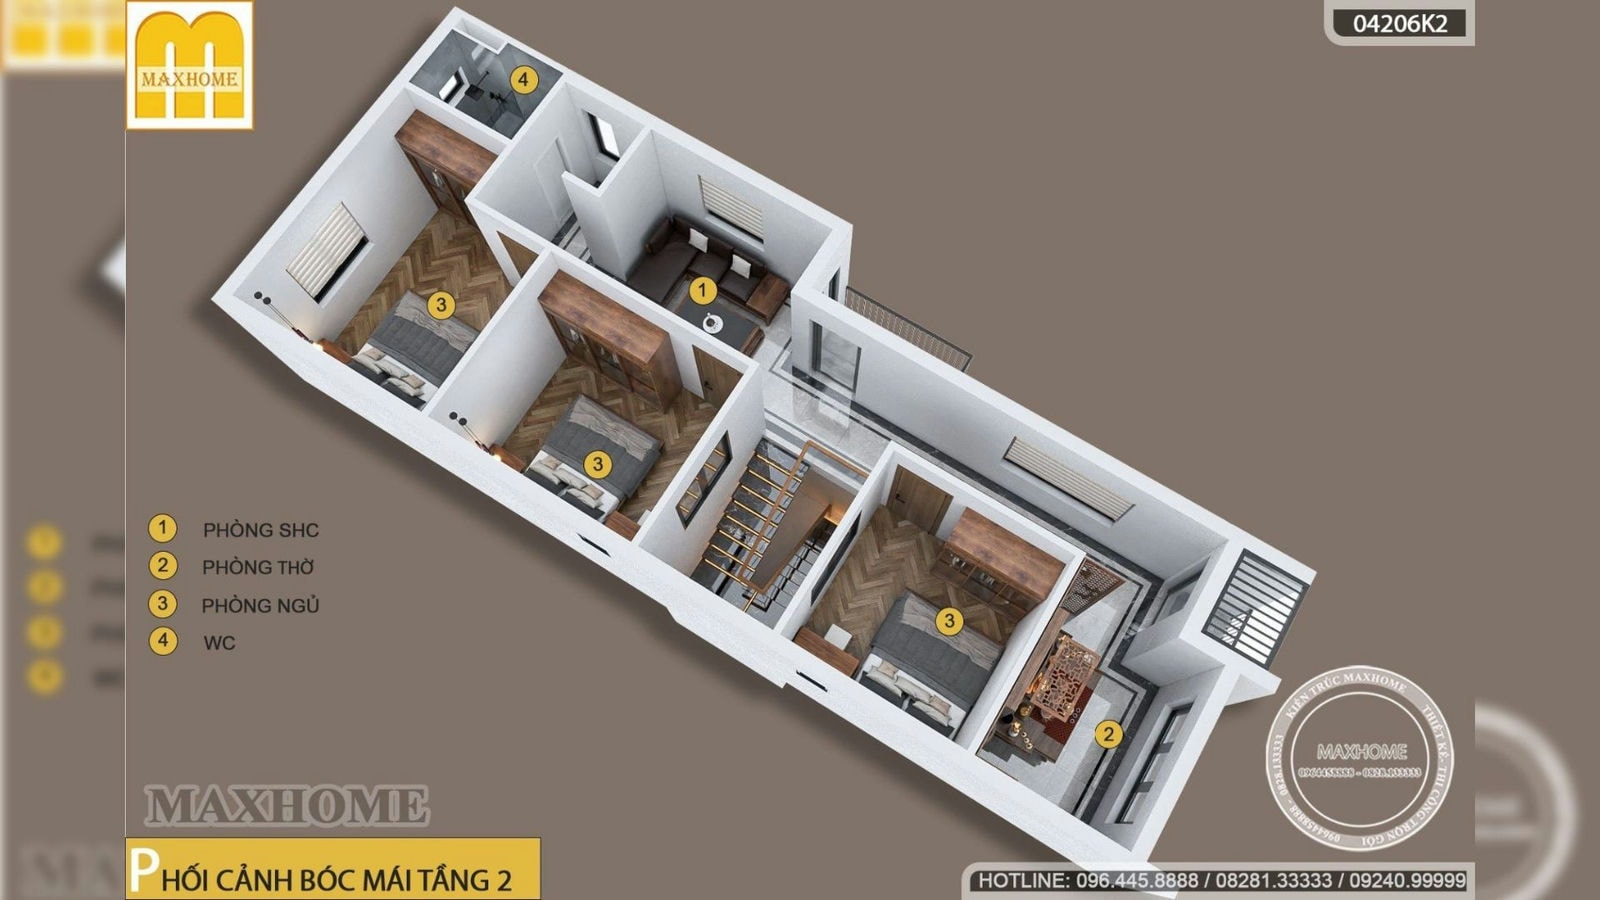 Gợi ý mẫu nhà hiện đại 2 tầng mái bằng GIÁ RẺ bất ngờ ở Gia Viễn | MH02390